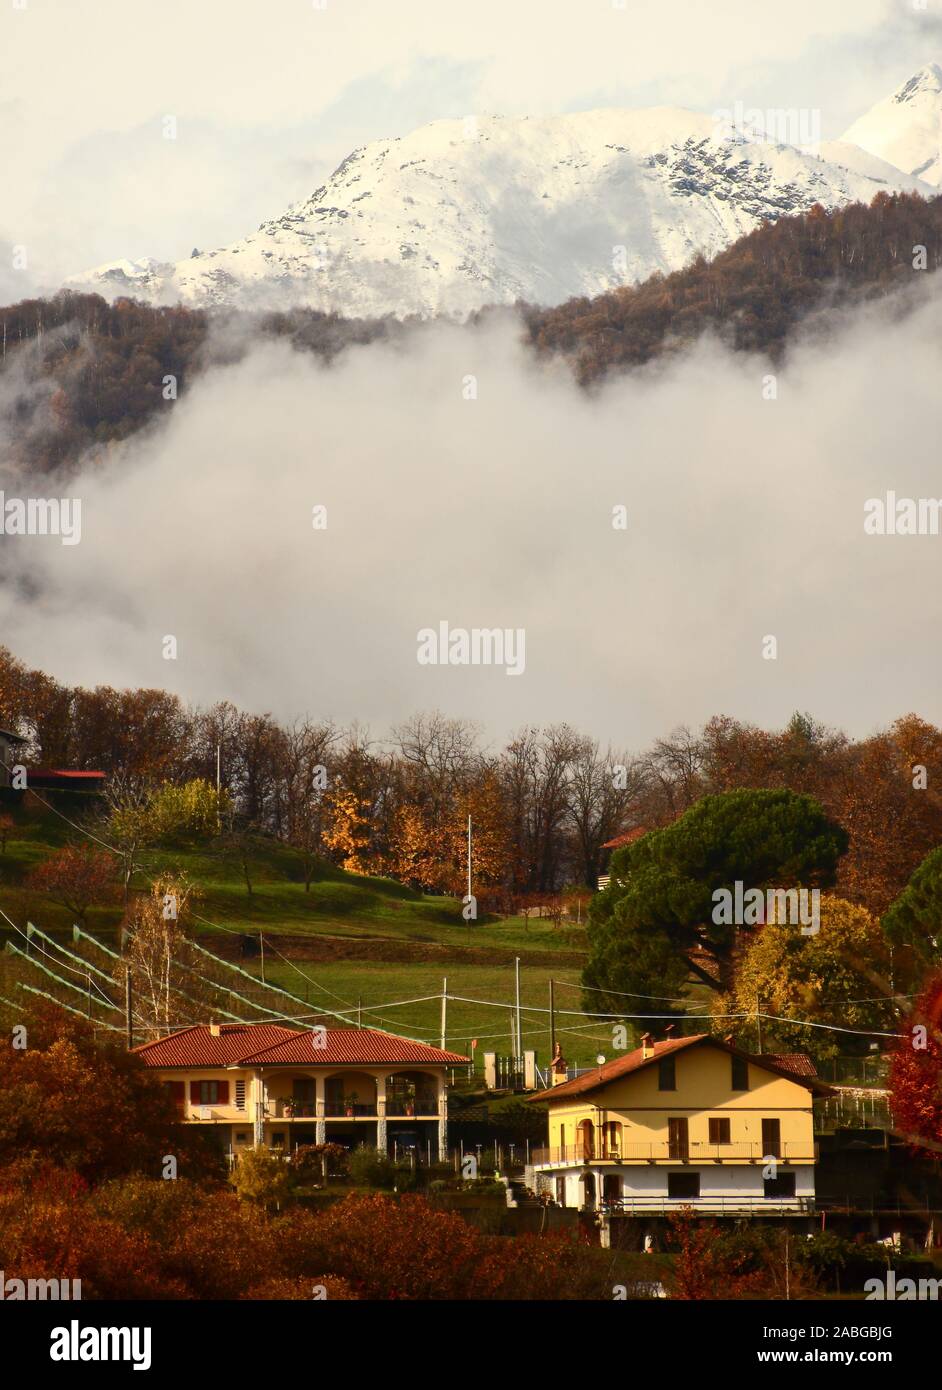 Humeur d'automne dans un village de montagne entre la brume et la neige Banque D'Images